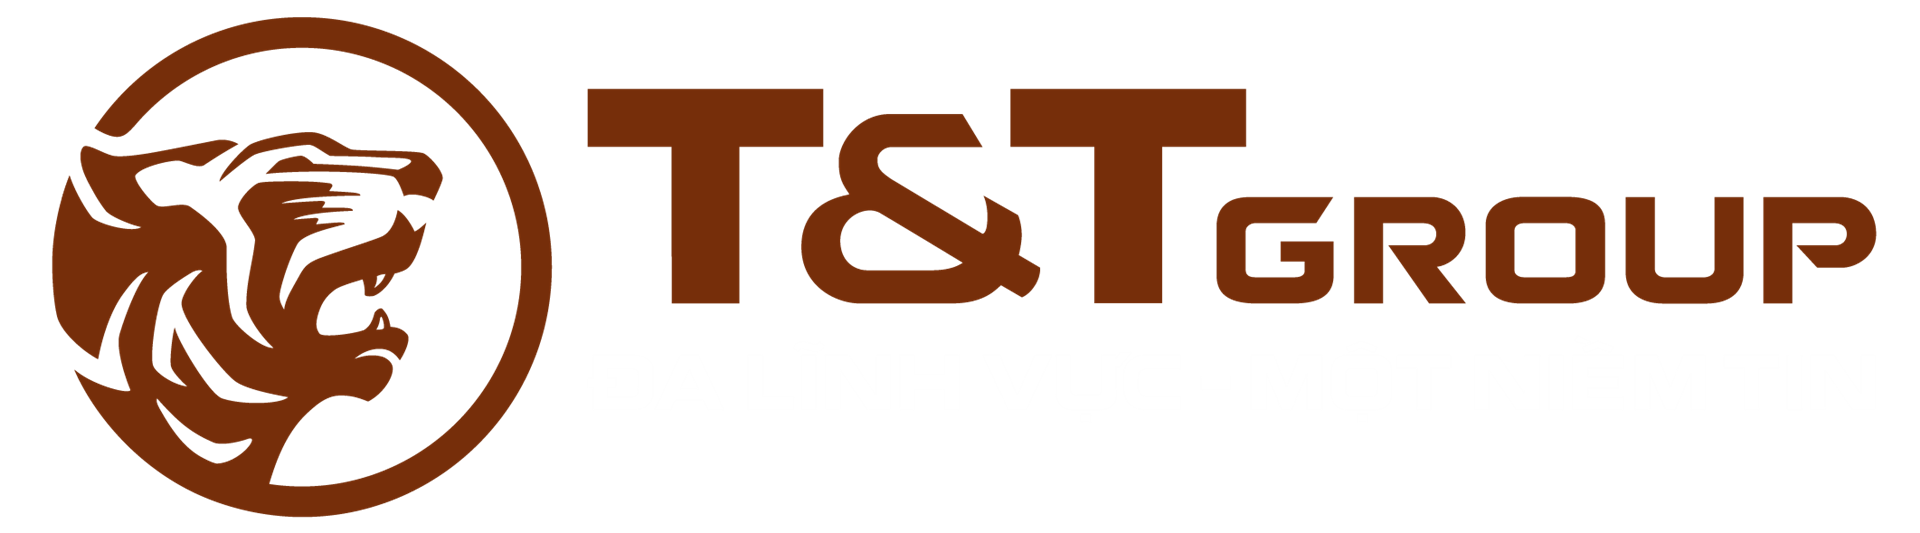 Website Tập đoàn T&T